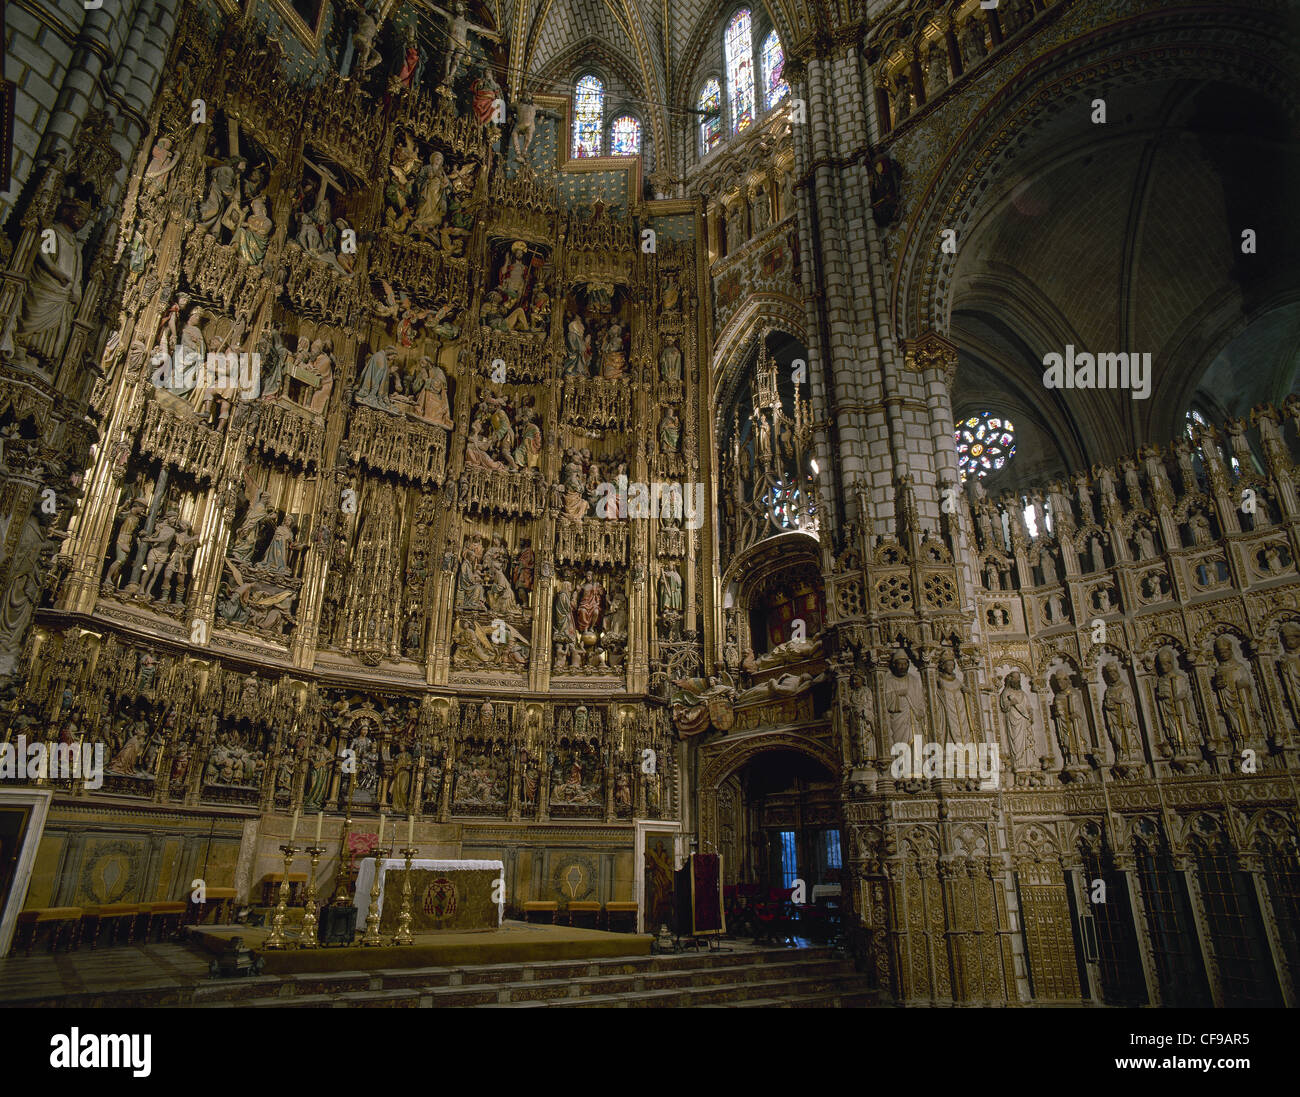 Spanien. Altarbild von der Kathedrale von Toledo, die Szenen aus dem Leben Christi (1497-1504). Polychrome Holz. Kastilien-La Mancha. Stockfoto